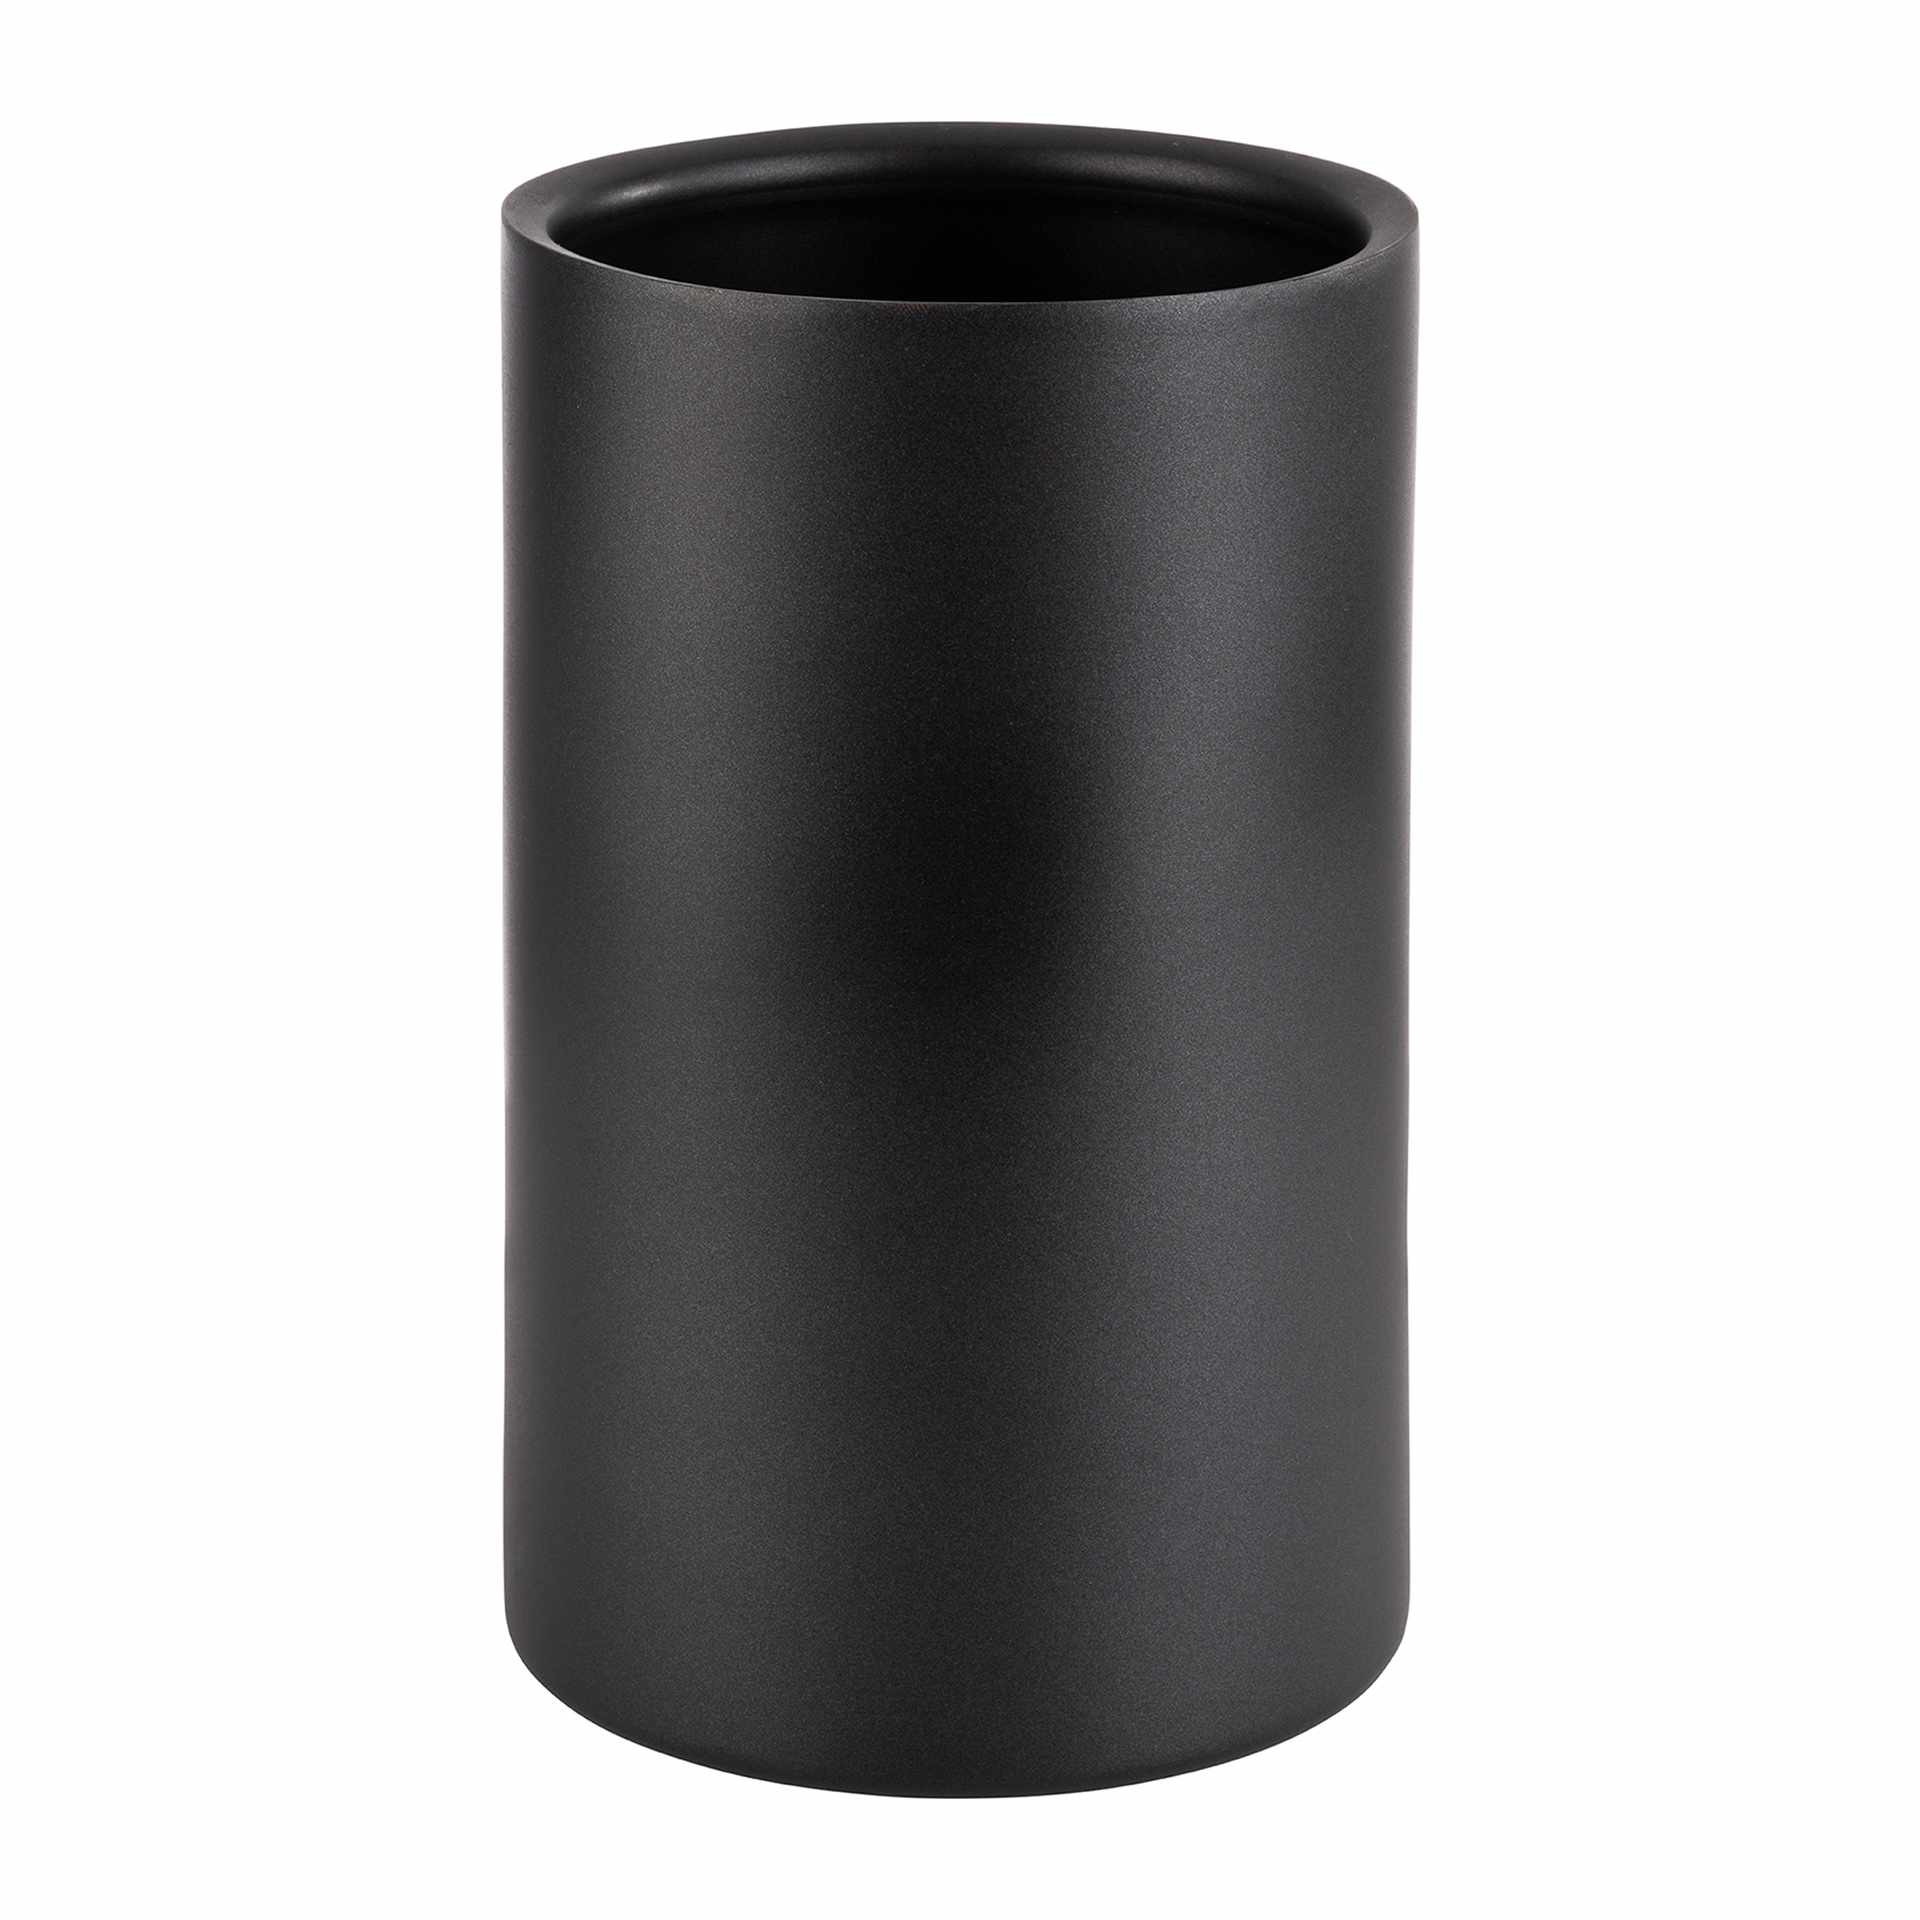 Flaschenkühler - schwarz - rund - Höhe 20,0 cm - Ø (außen) 12 cm - Edelstahl - 36127-B